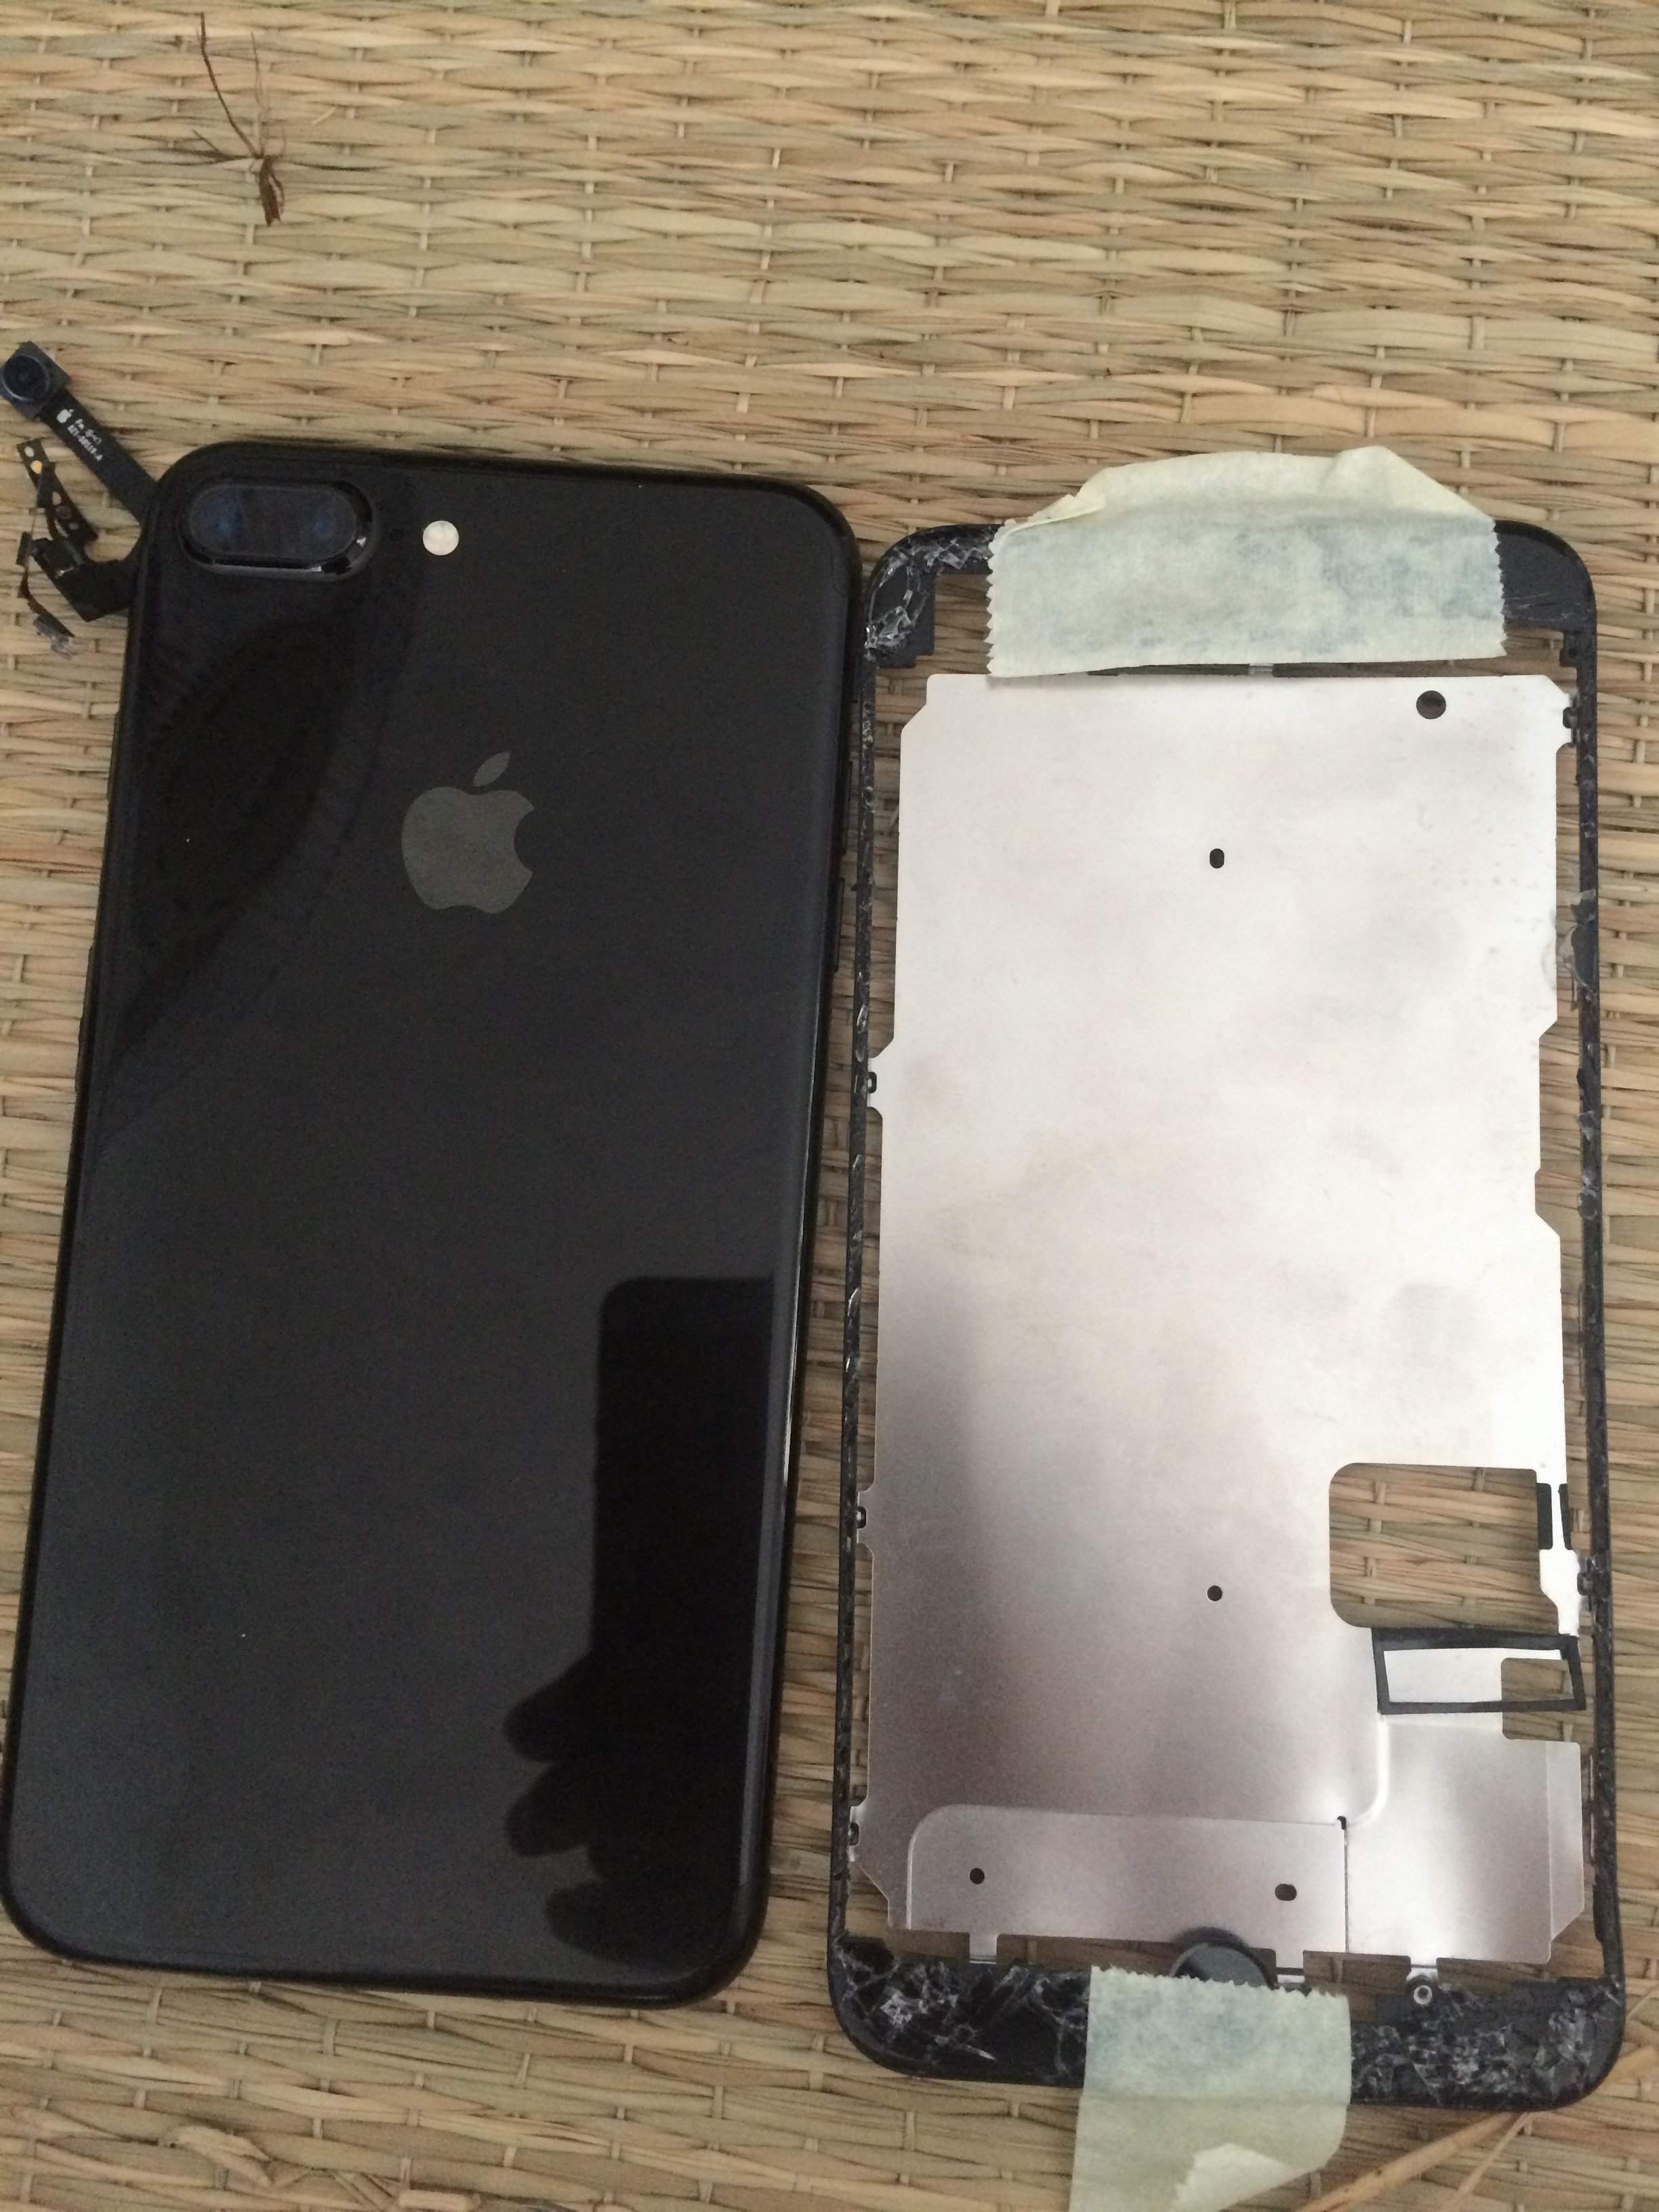 iPhone 7 Plus đen hỏng màn hình: Dù có thể gặp những sự cố không may như hỏng màn hình, chiếc iPhone 7 Plus đen vẫn sẵn sàng mang đến cho bạn những trải nghiệm tuyệt vời về sức mạnh, cá tính và chất lượng hình ảnh. Hình ảnh liên quan sẽ giúp bạn thấy rõ được sự đẳng cấp của sản phẩm này.